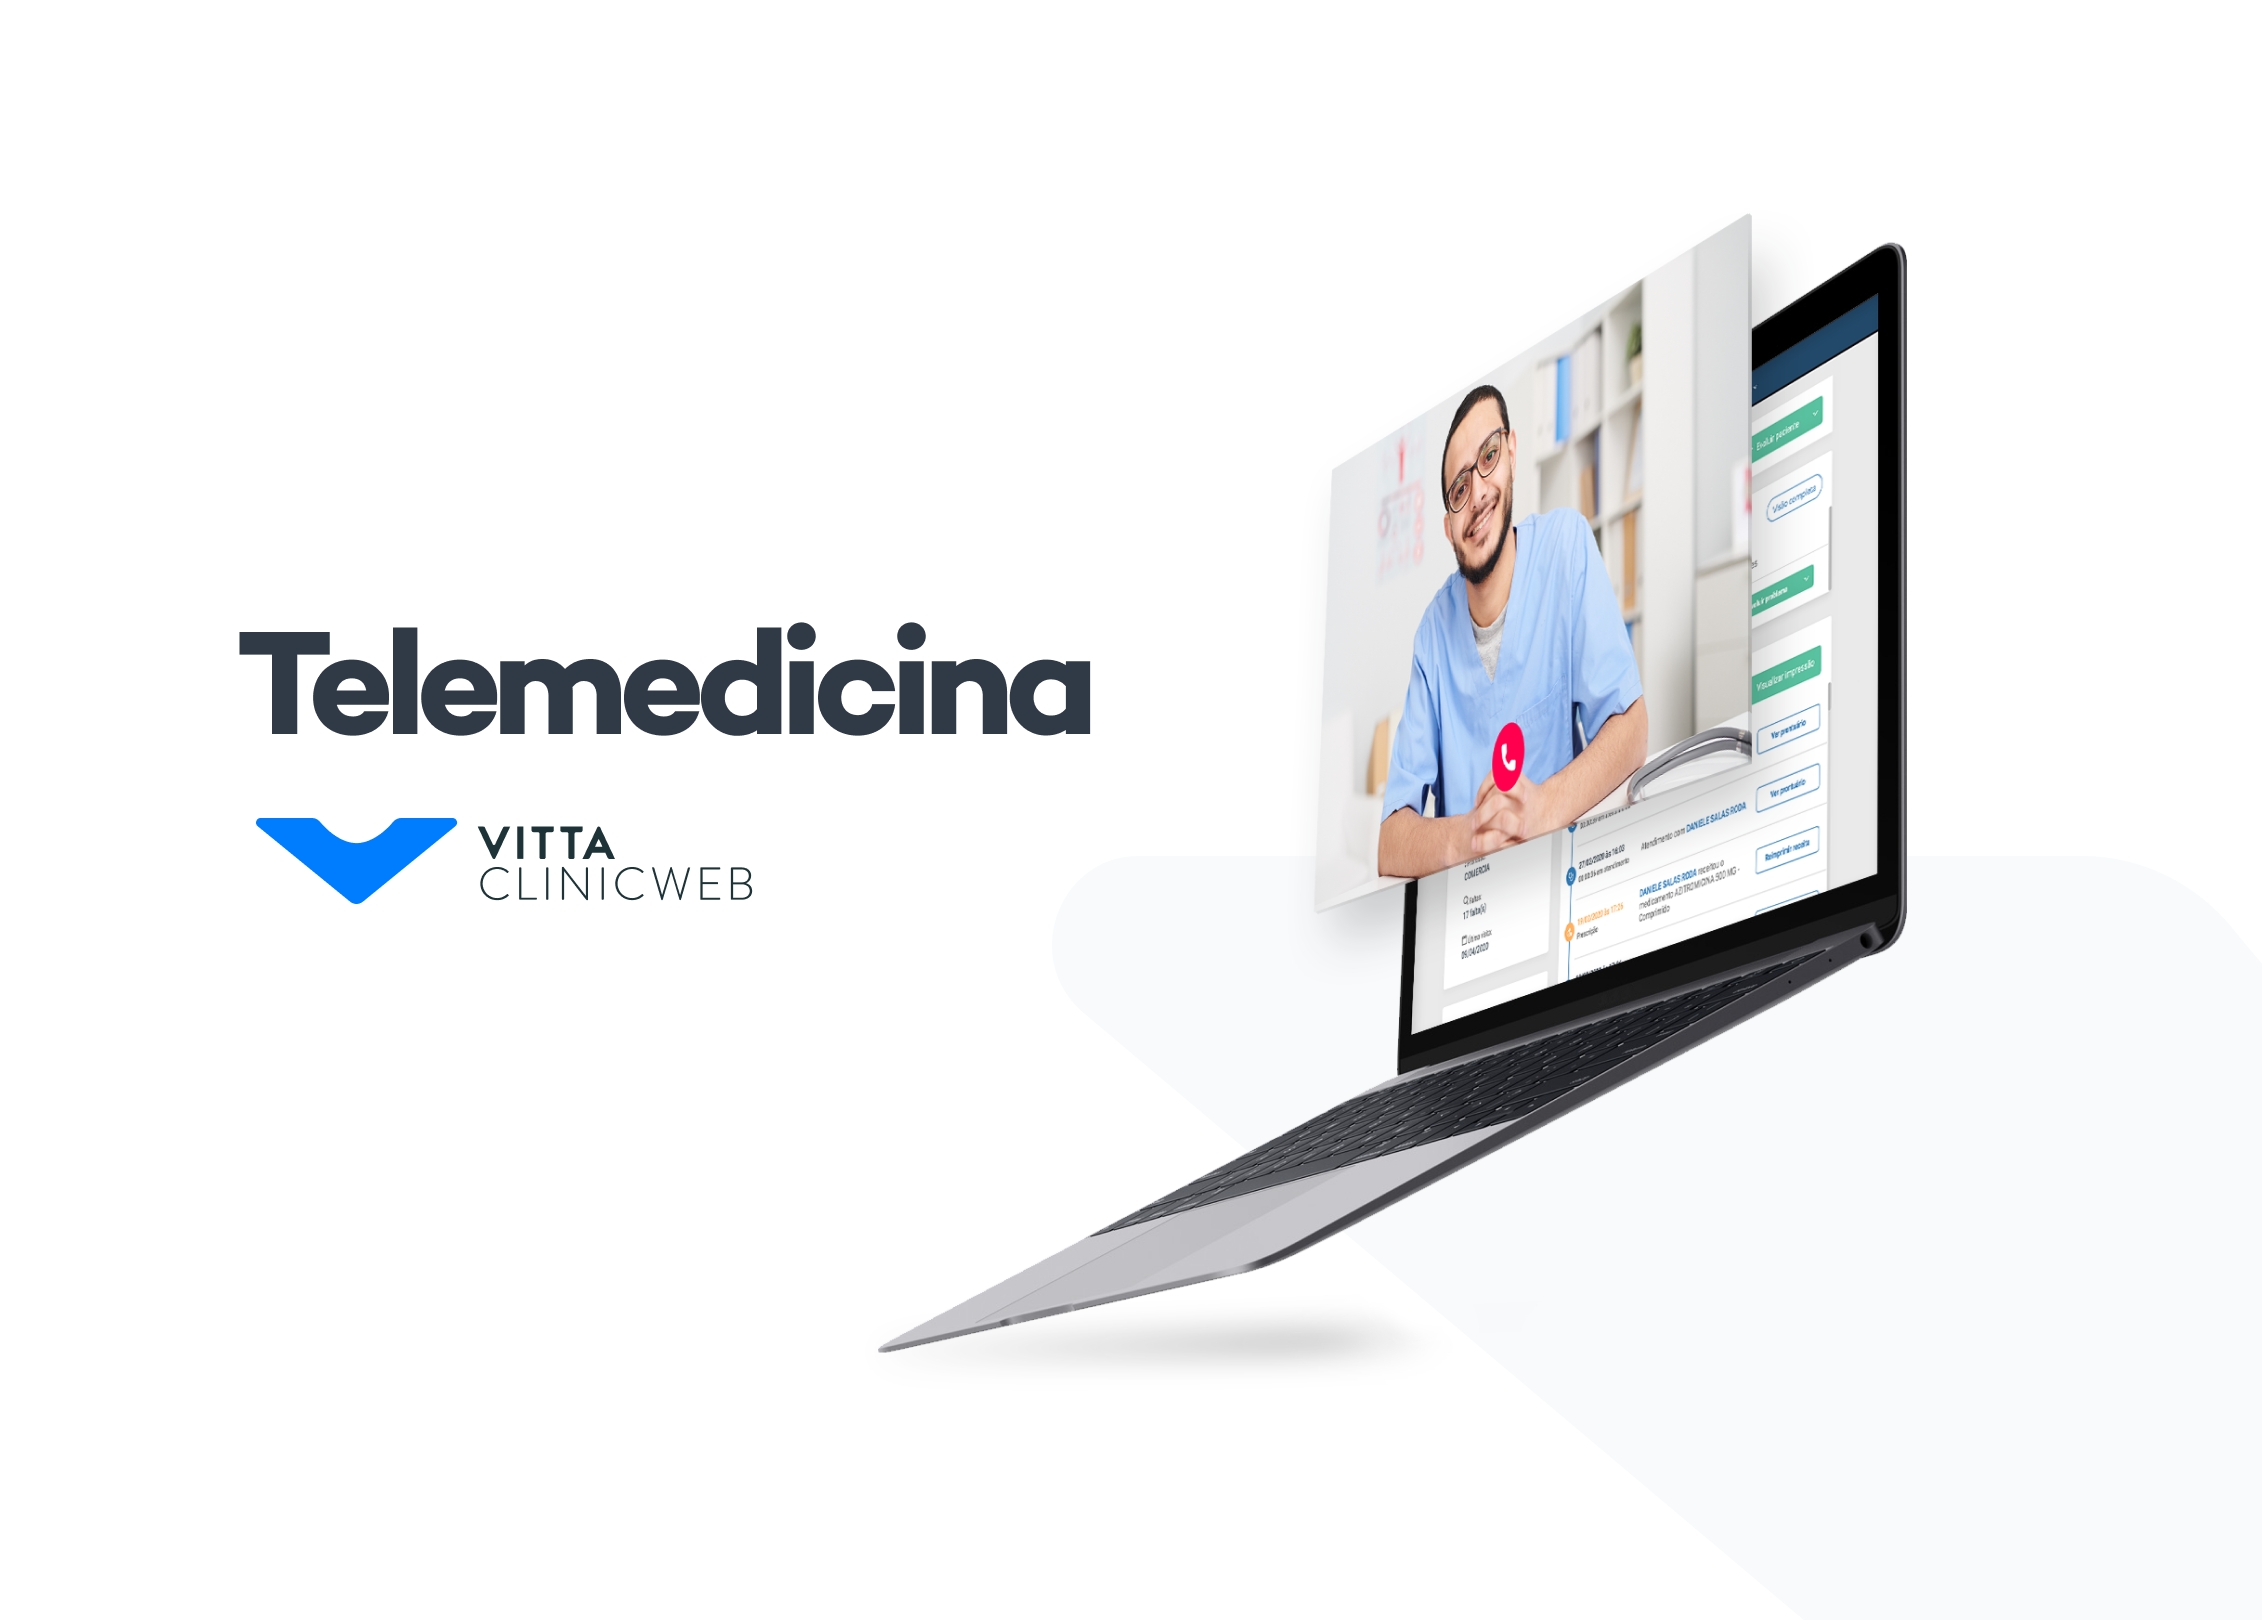 Vitta lança software de telemedicina gratuito para médicos até o fim da pandemia